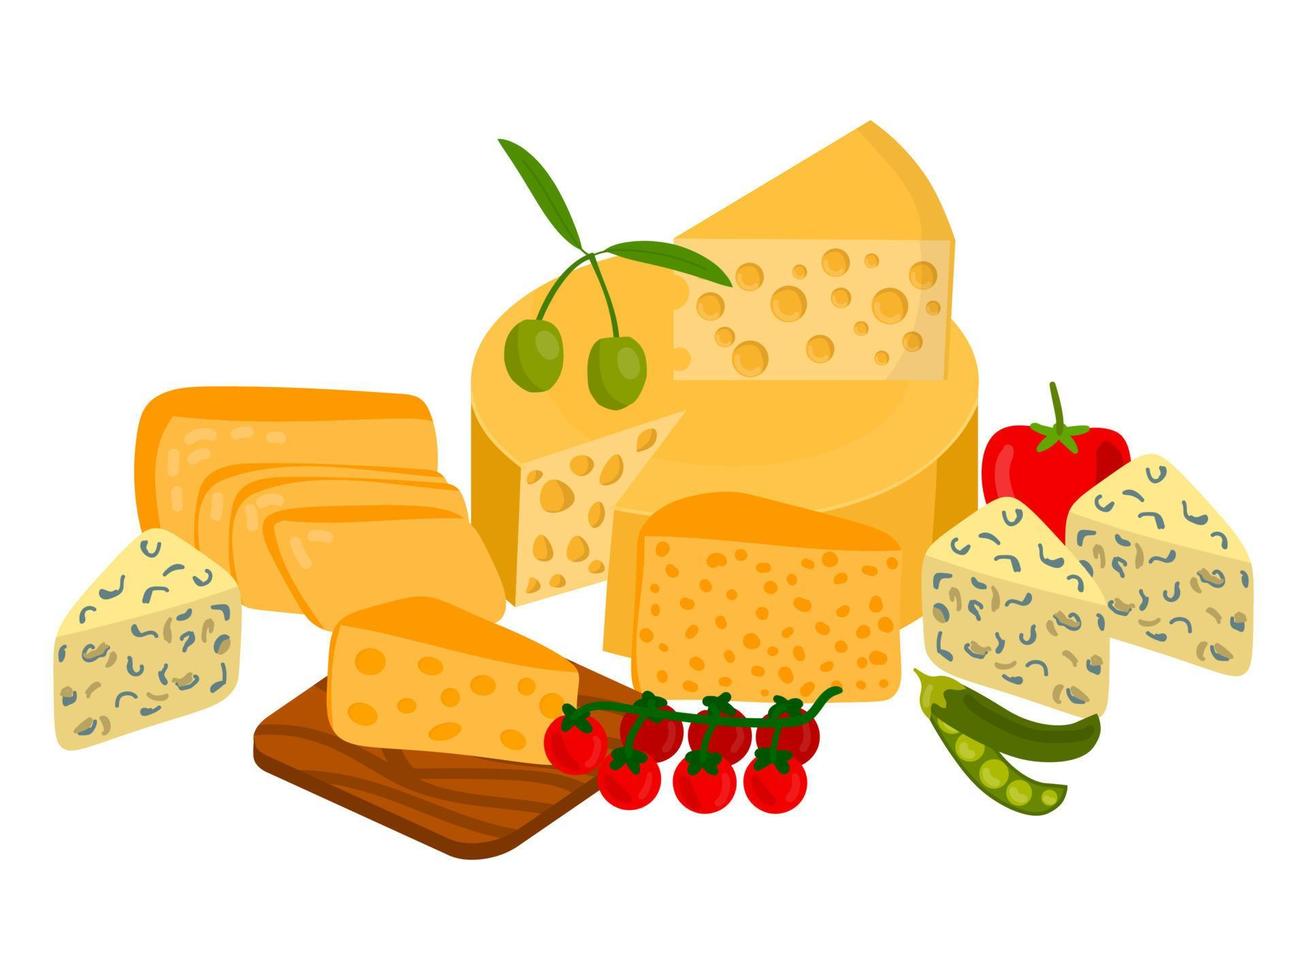 diferentes tipos de queijo fofos. composição de produtos lácteos isolado no fundo branco. queijo azul e queijo fundido, cheddar e parmesão, camembert e gouda. vetor